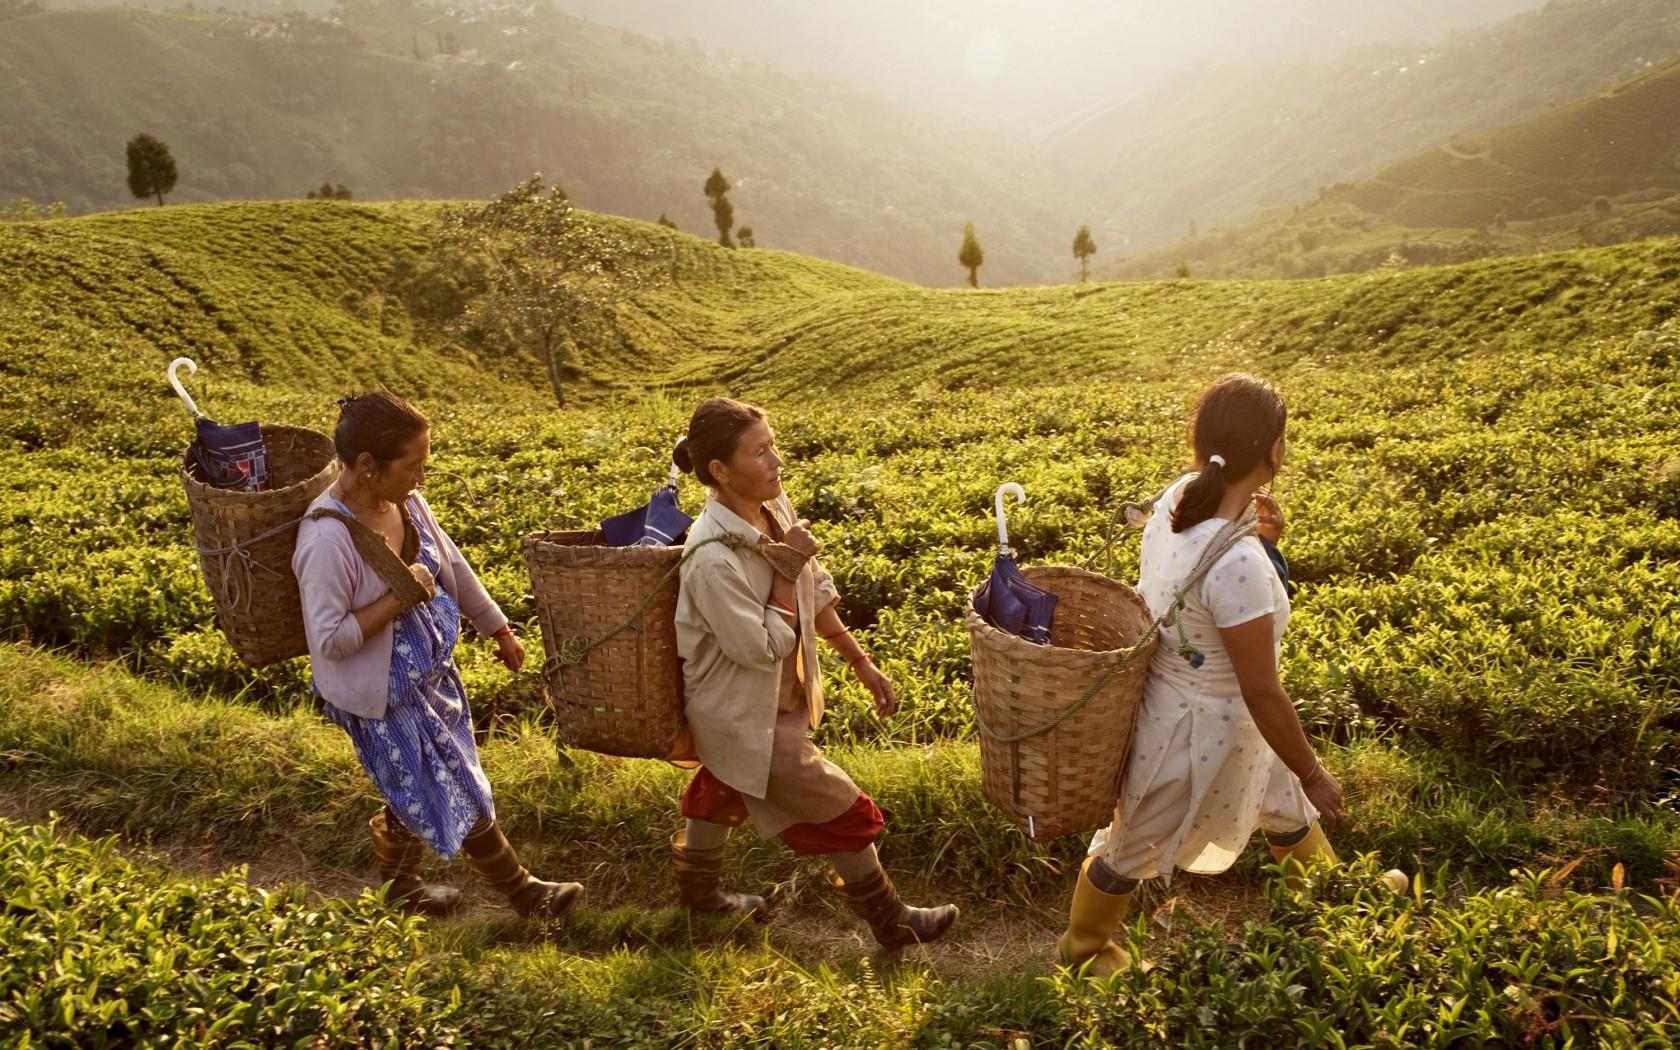 दार्जिलिंग की चाय - भारत में चाय की चुस्की का स्वाद दुनियाभर में प्रसिद्ध है। आसाम और दार्जिलिंग की चाय लोगों को अपने आप ही अपनी ओर खींचती है।